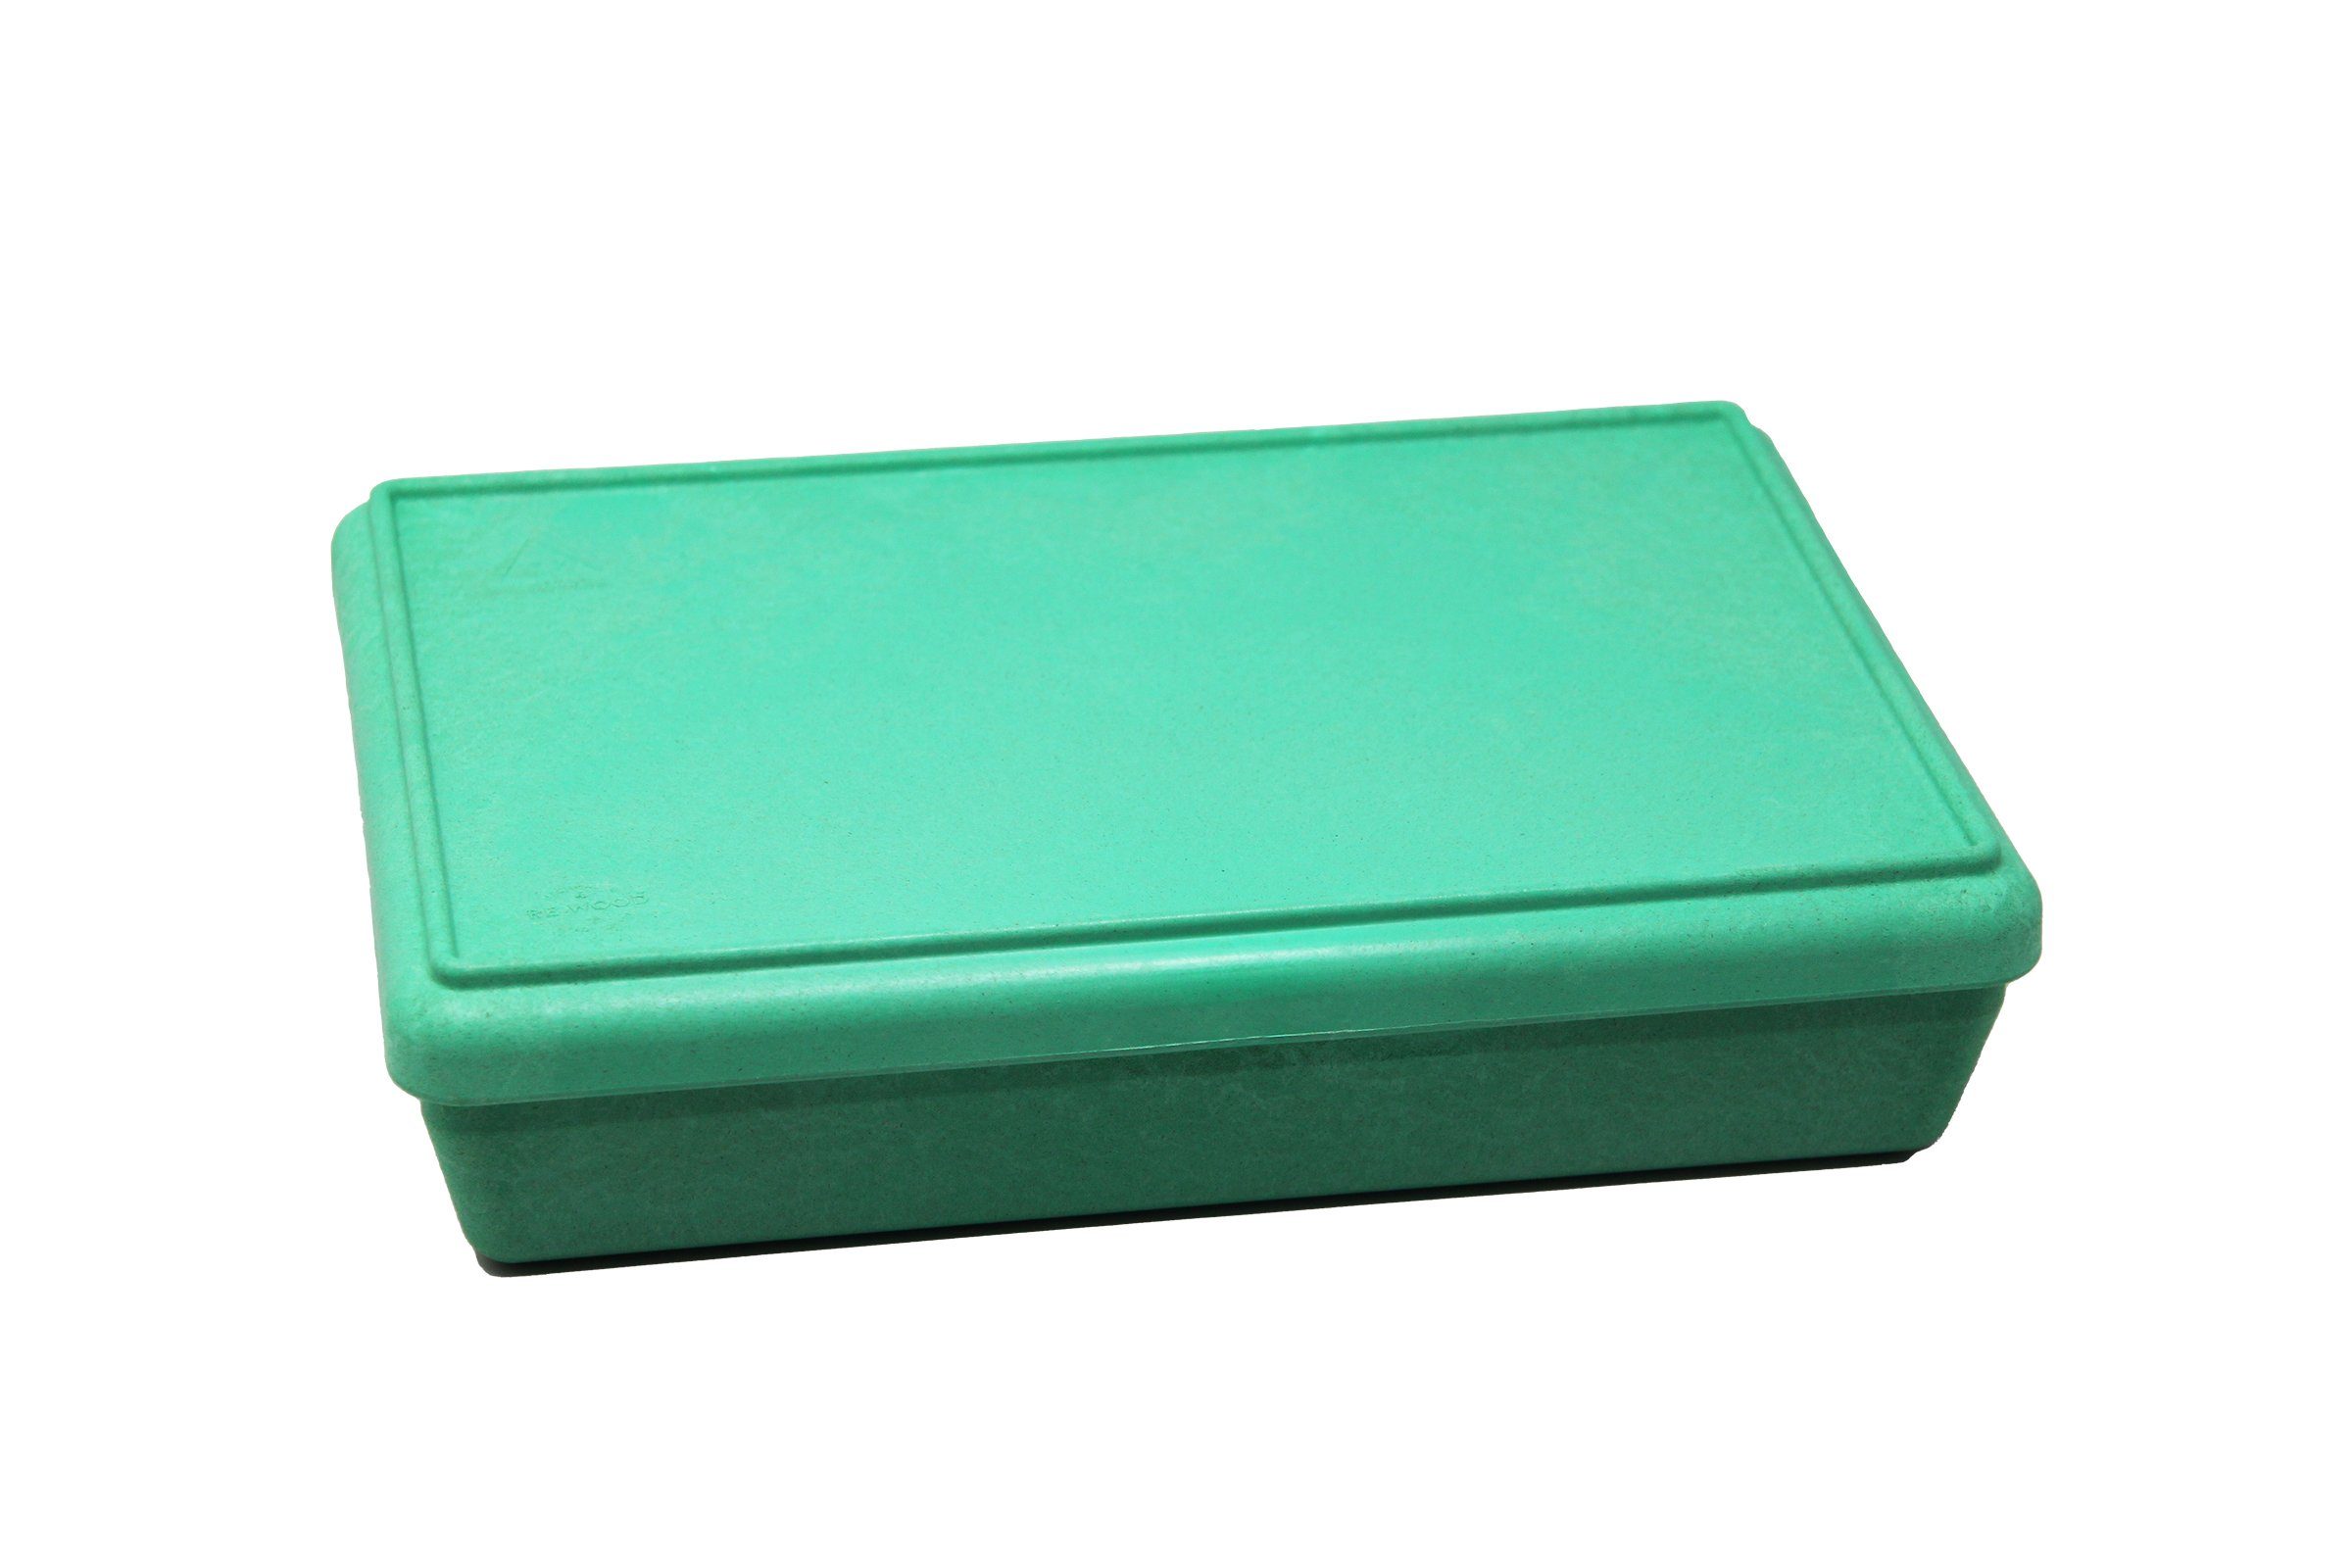 Box versch. lernen mit stapelbar Lernspielzeug Farben, grün aktiv RE-Wood® Aufbewahren Wissner® Deckel in